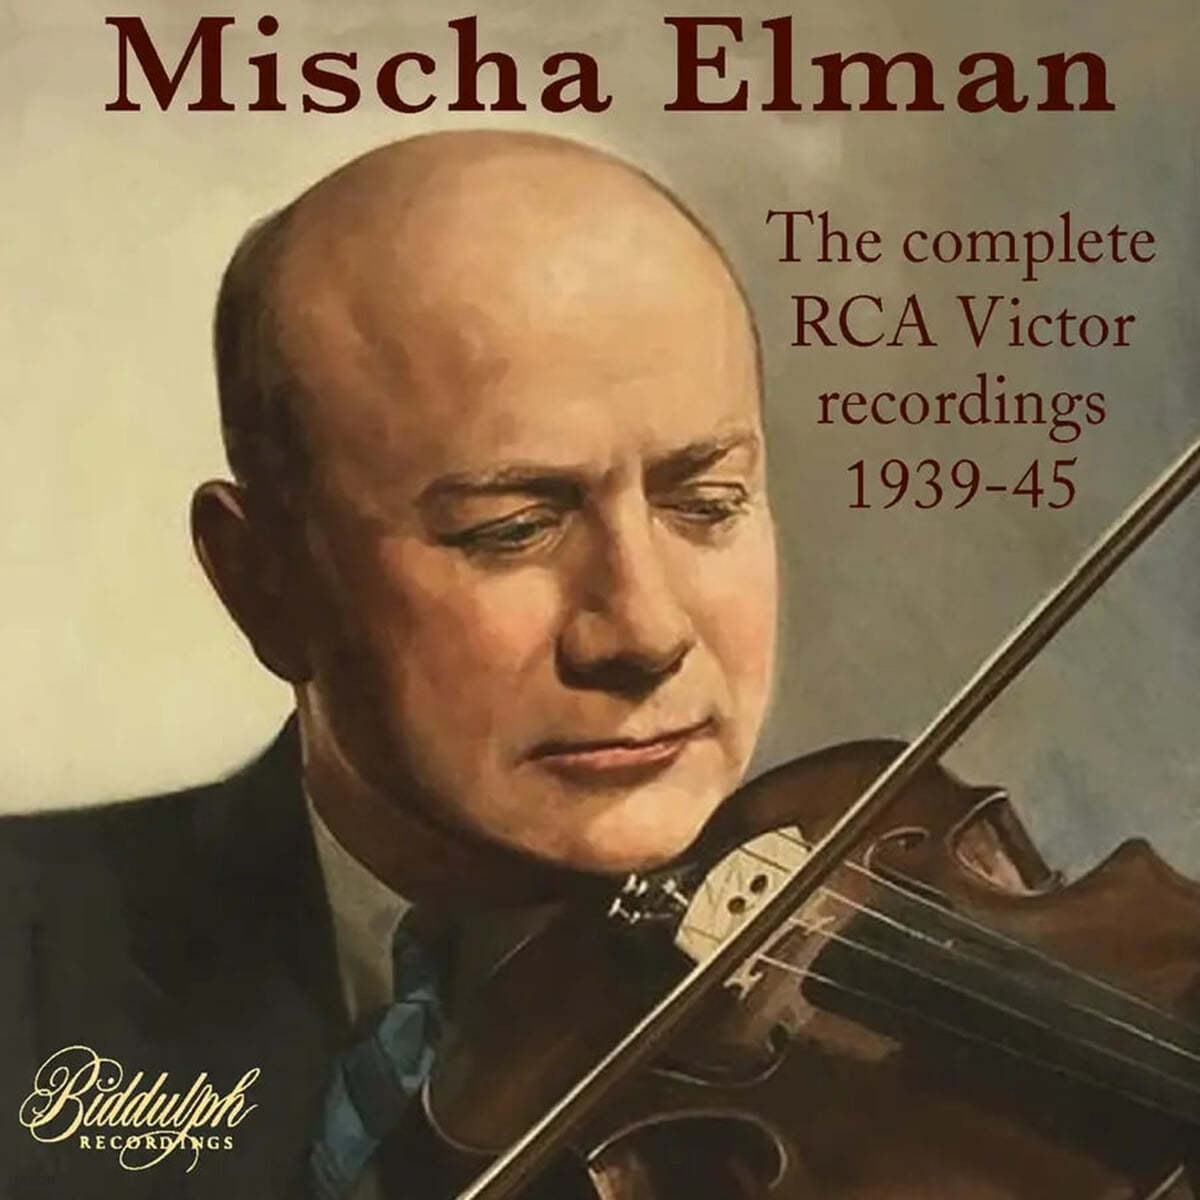 Mischa Elman 미샤 엘만 RCA 레이블 녹음 전곡 (The Complete RCA Victor Recordings 1939-1945)